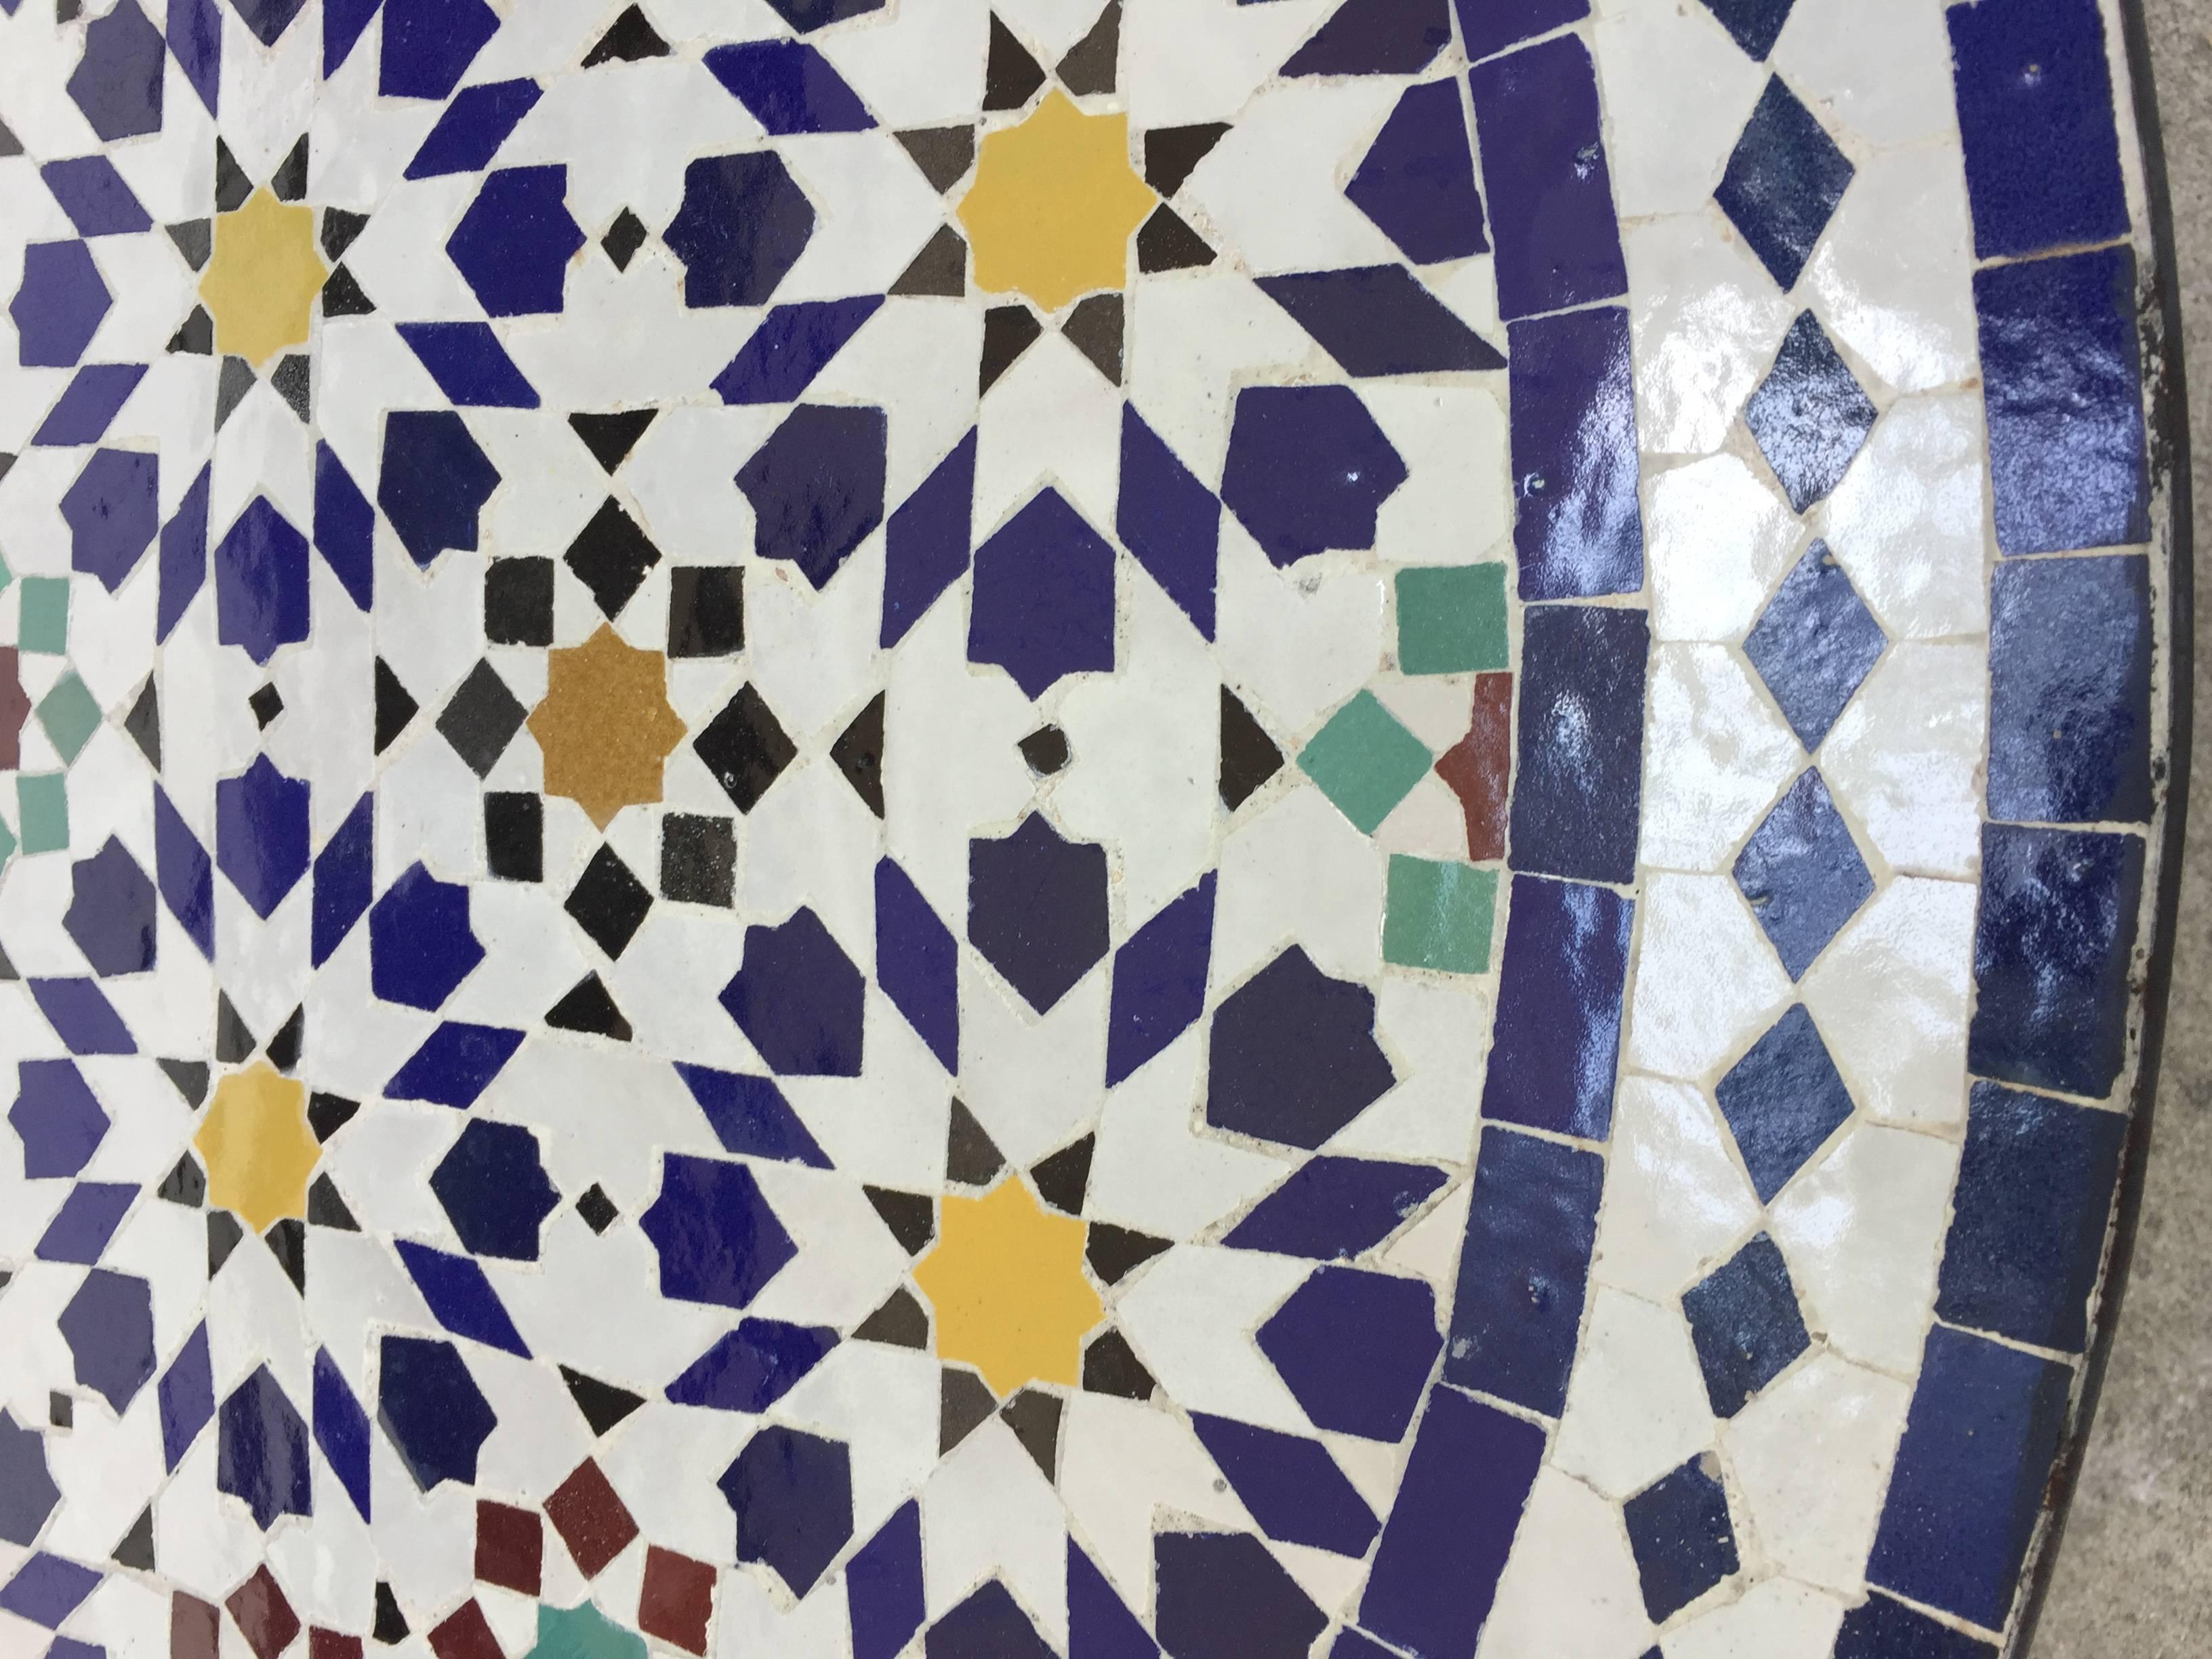 Superbe table en mosaïque marocaine, délicatement fabriquée à la main à Fès avec des motifs géométriques islamiques mauresques traditionnels dans des couleurs blanches, jaunes, bleues, rouges et vertes.
La table à carreaux repose sur une base en fer